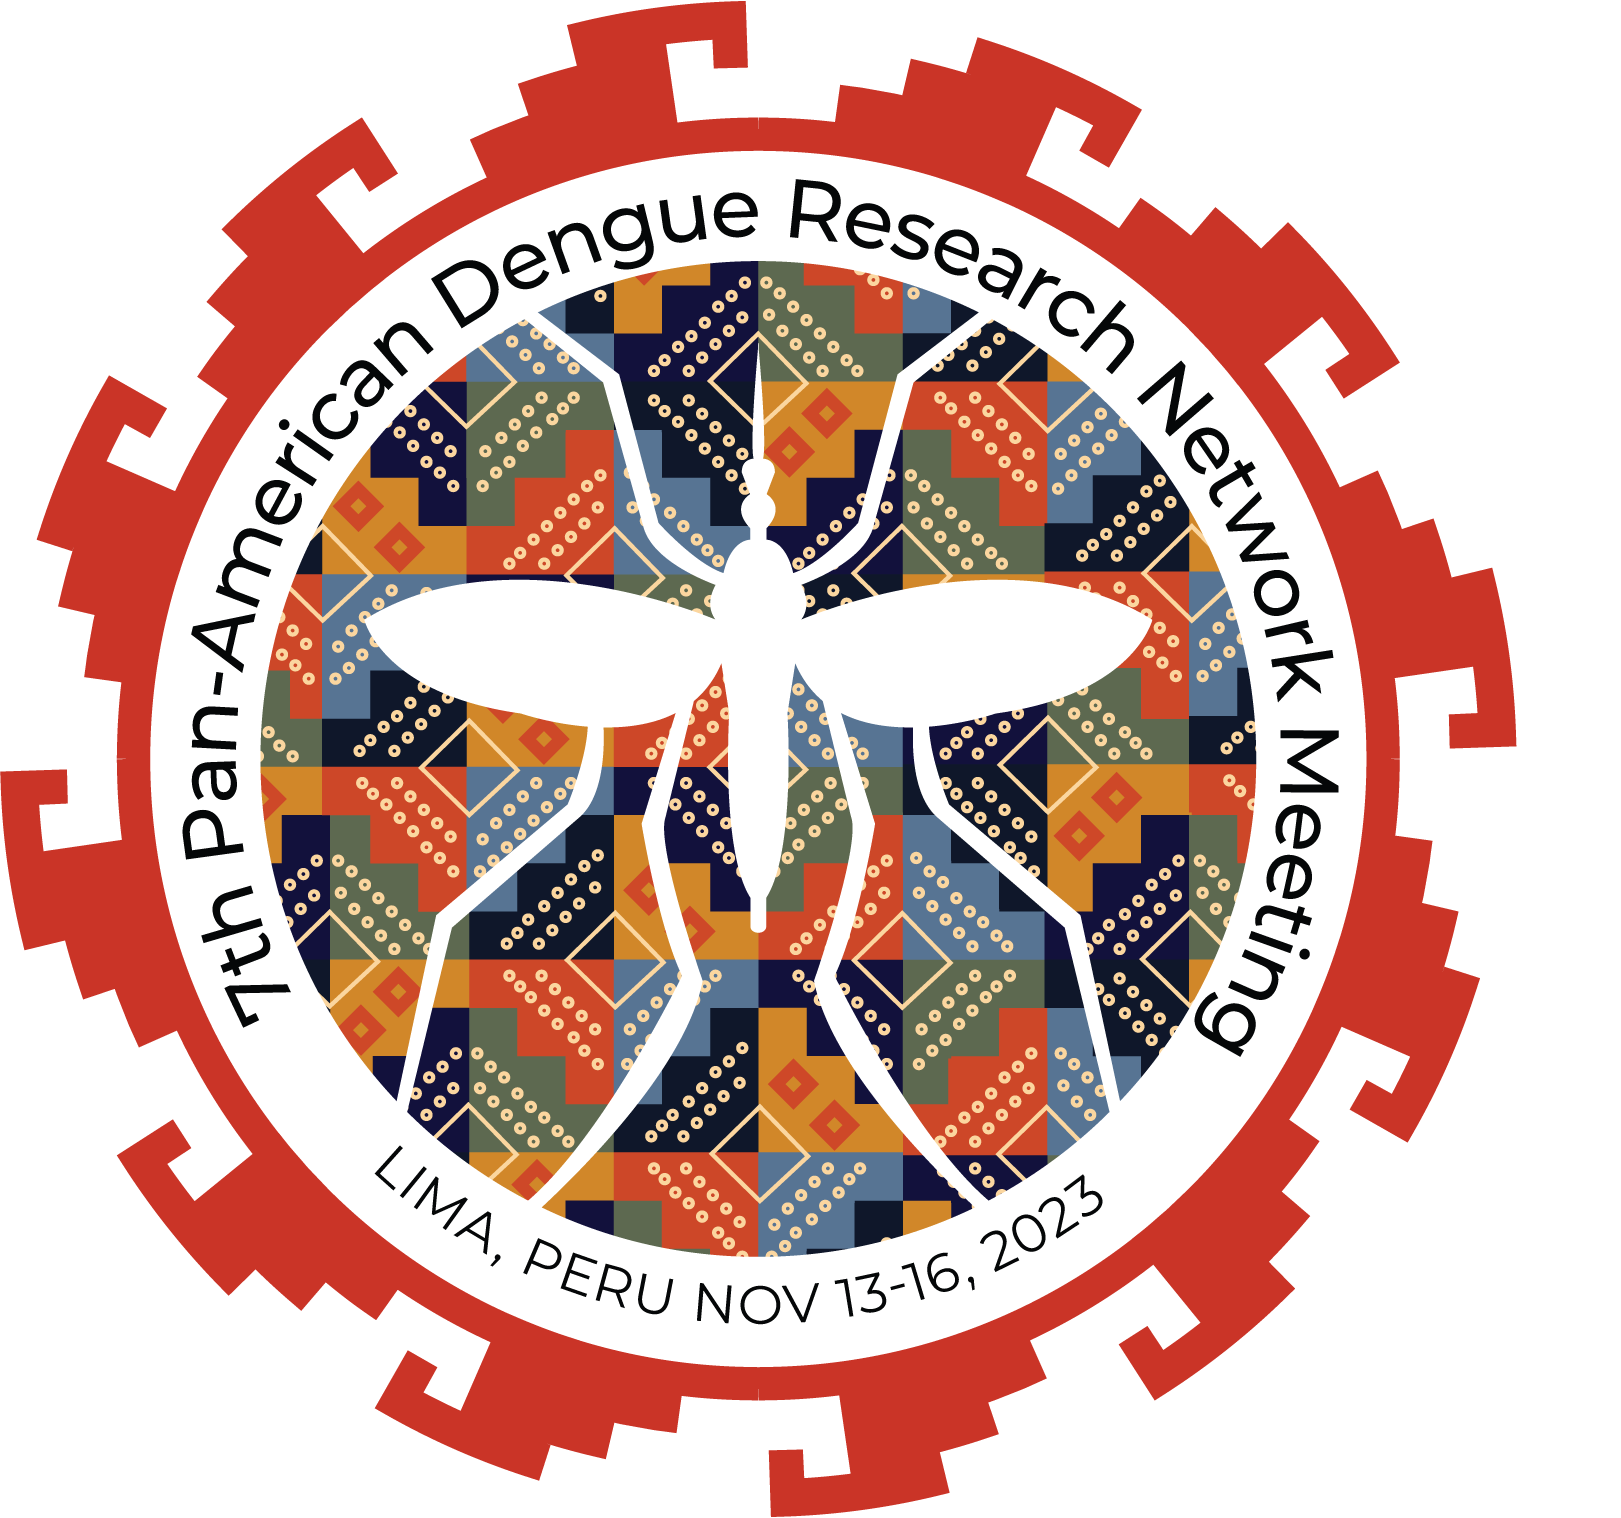 Pan American Dengue Research Network